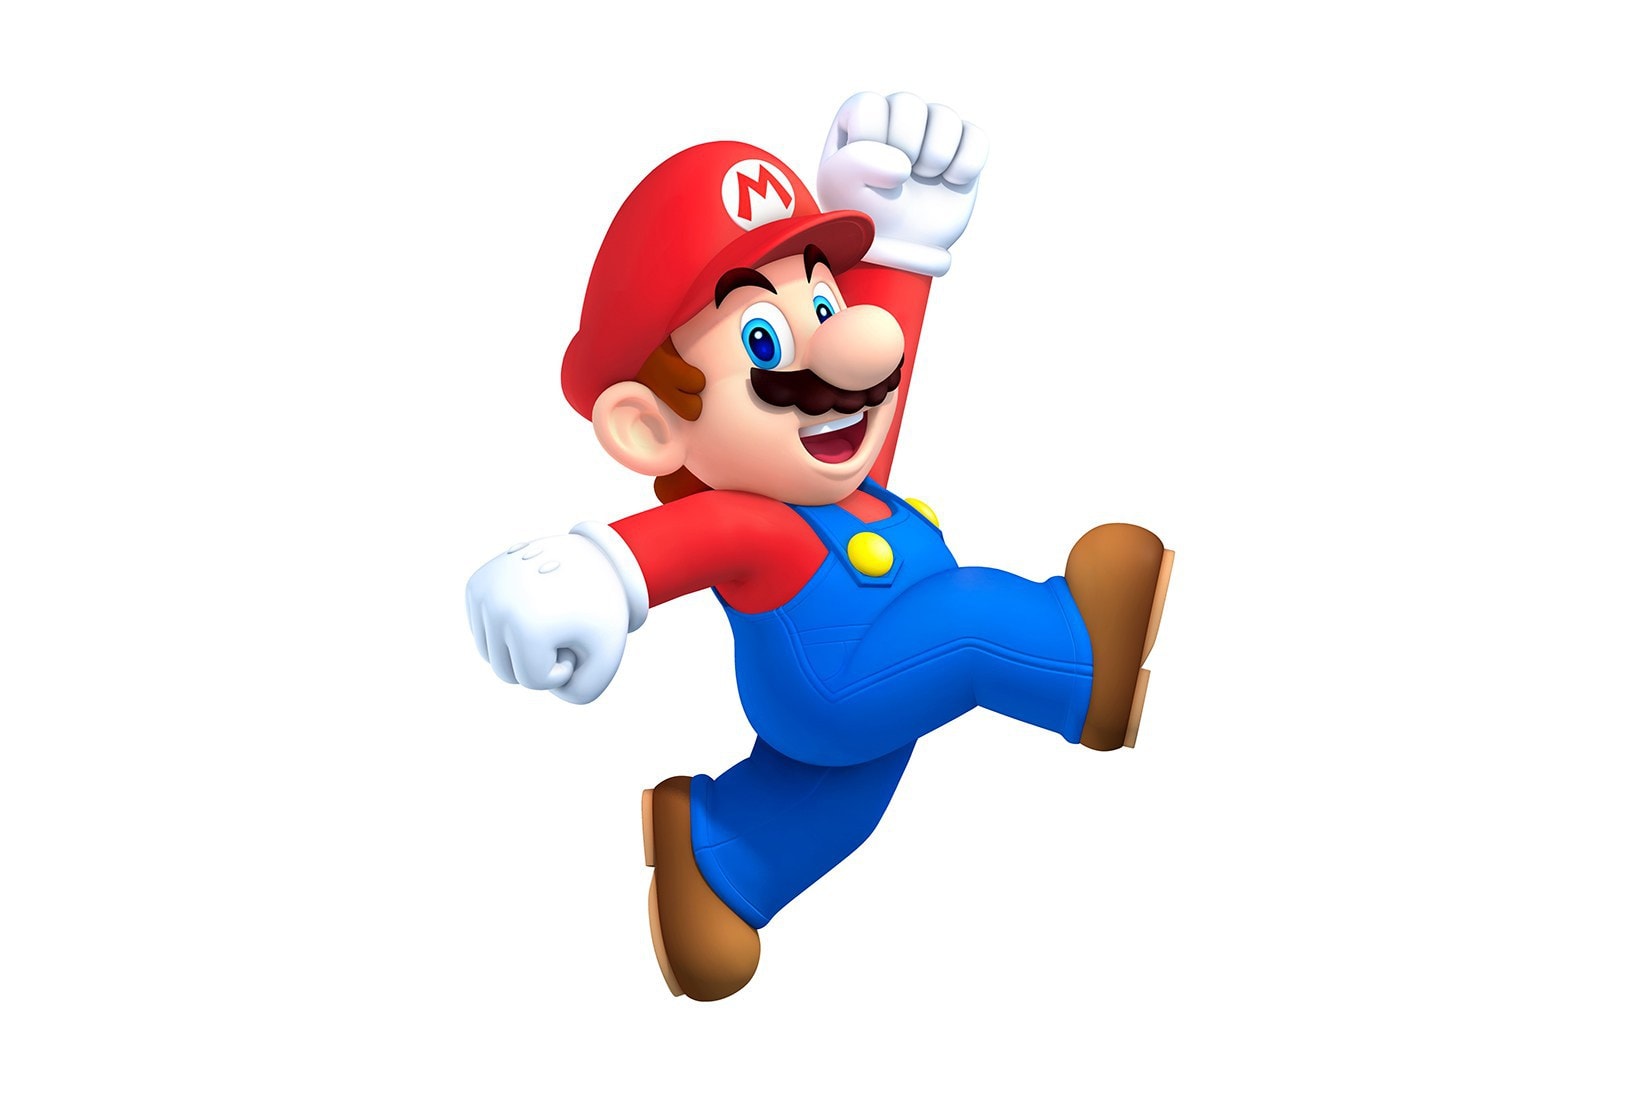 Super Mario Run 40 Million Downloads 4 Days